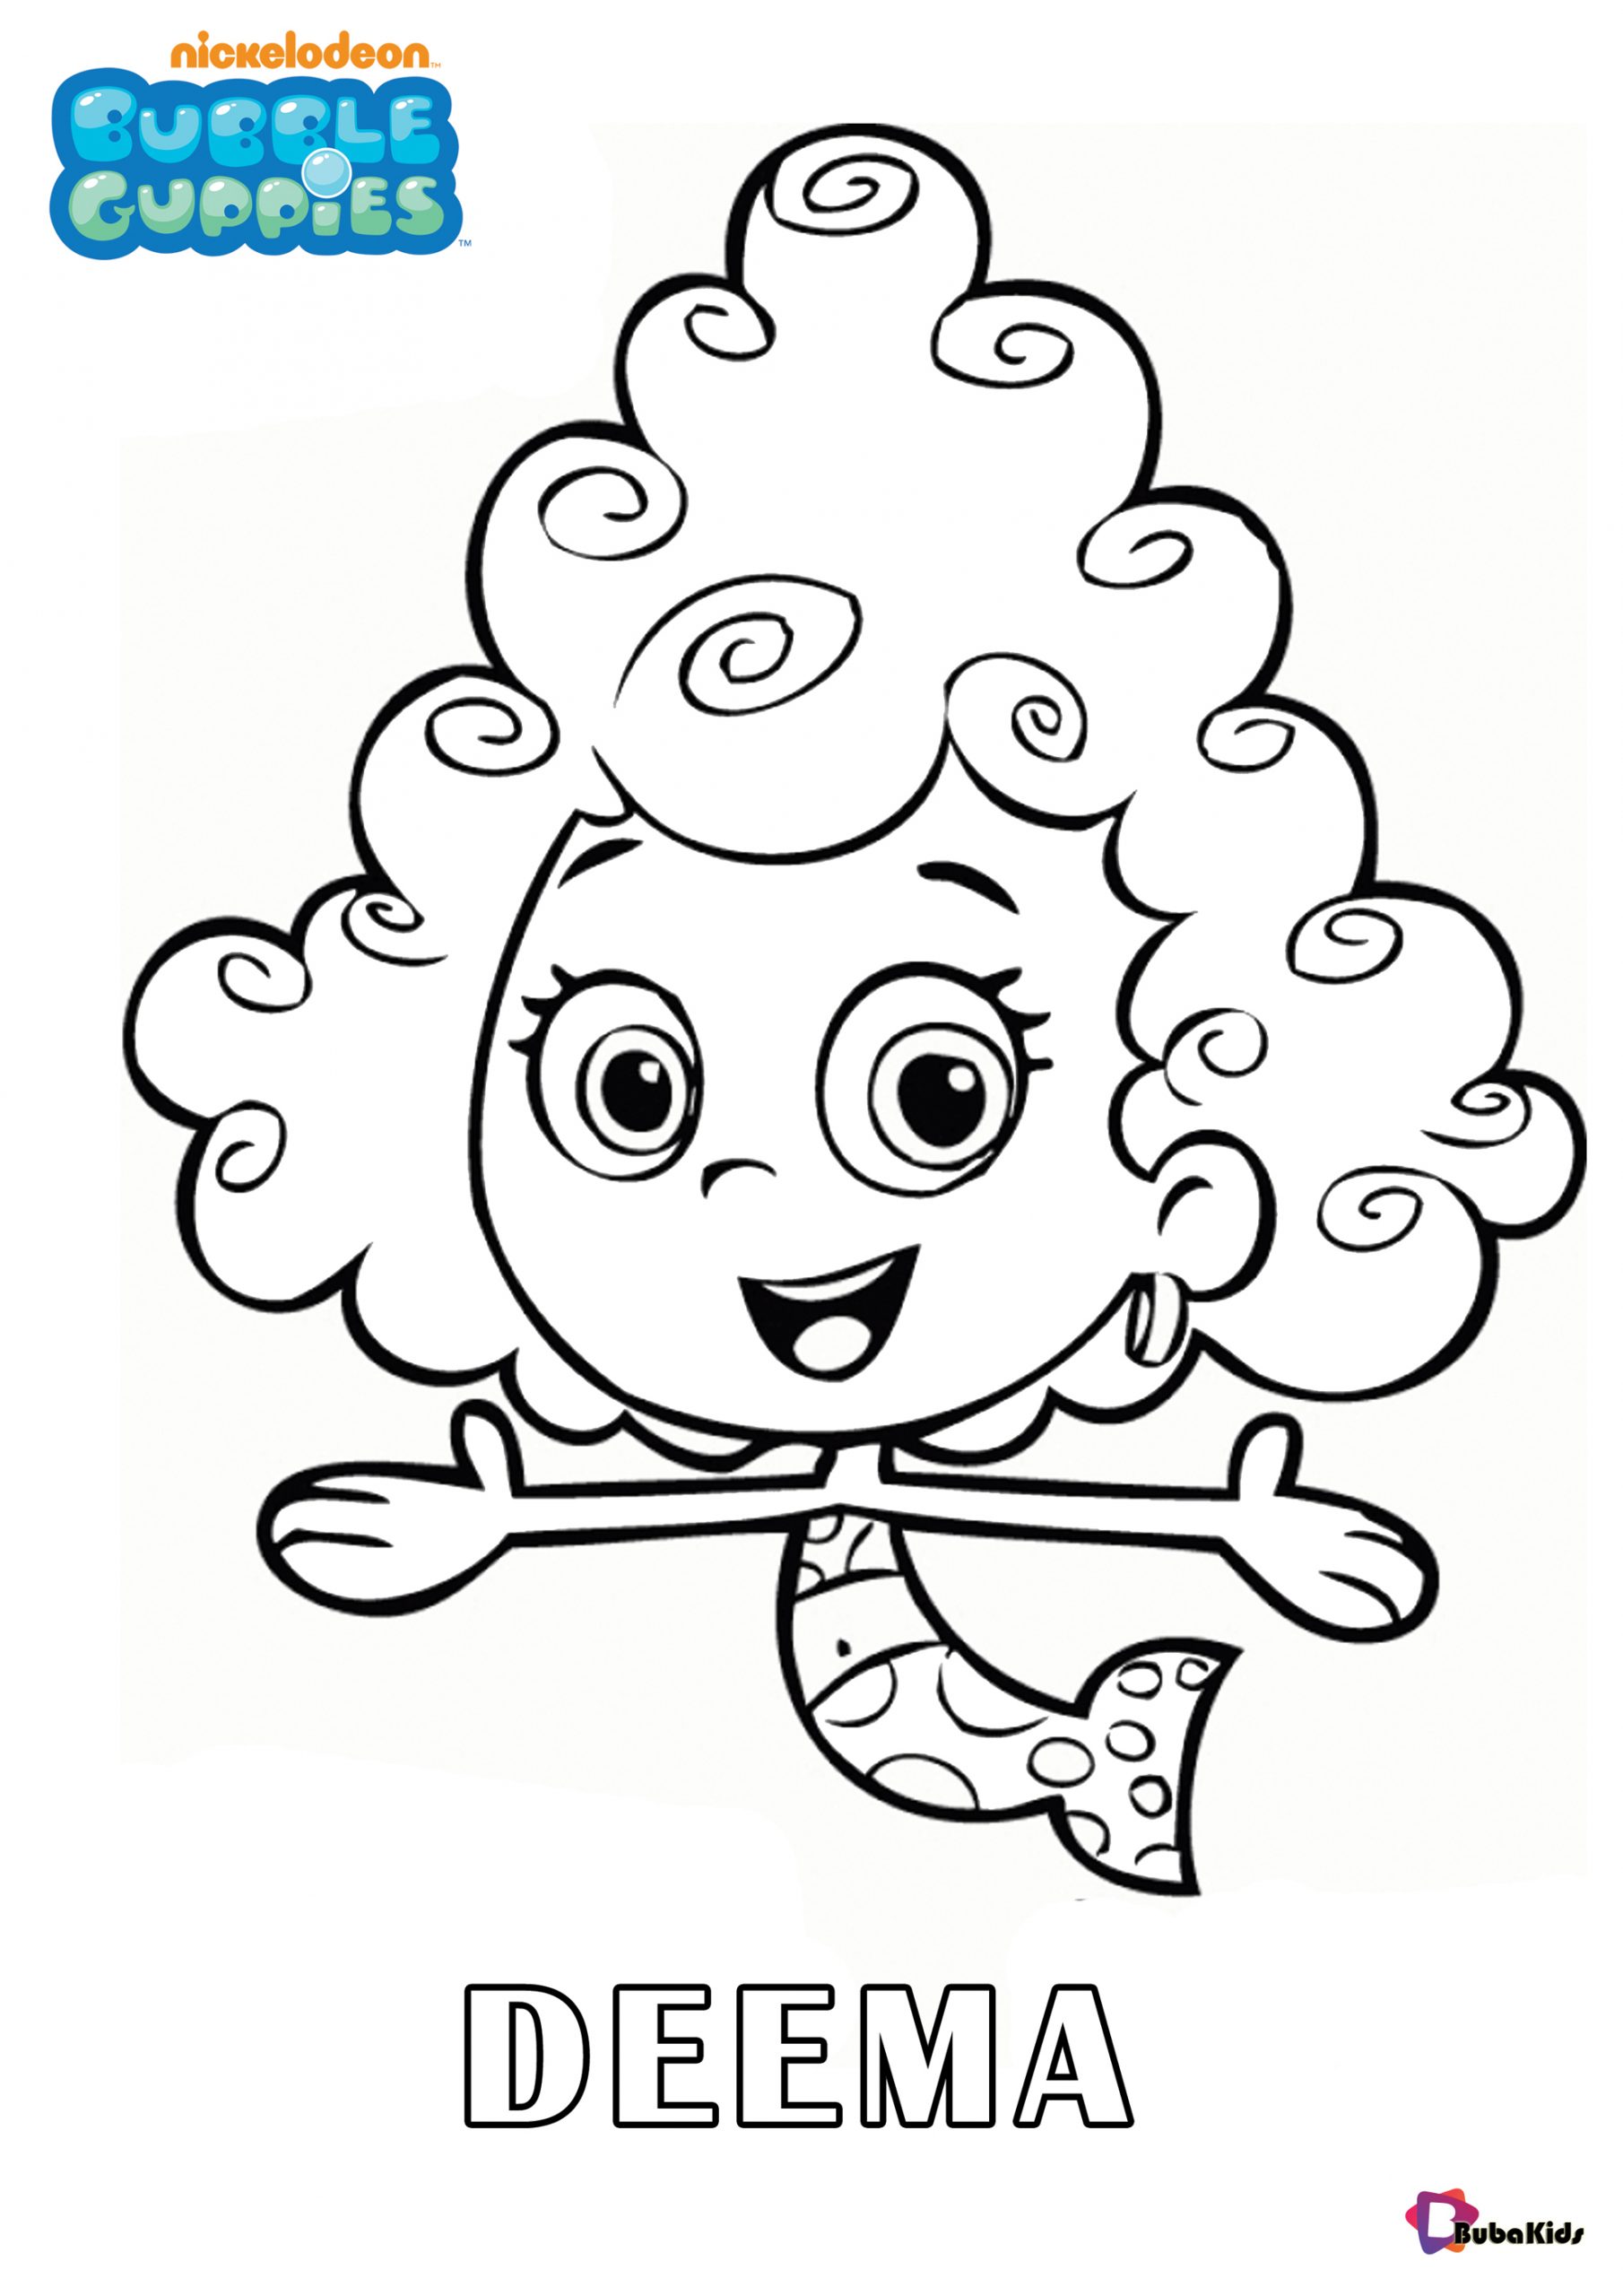 Deema Bubble Guppies character nickelodeon coloring sheet Wallpaper